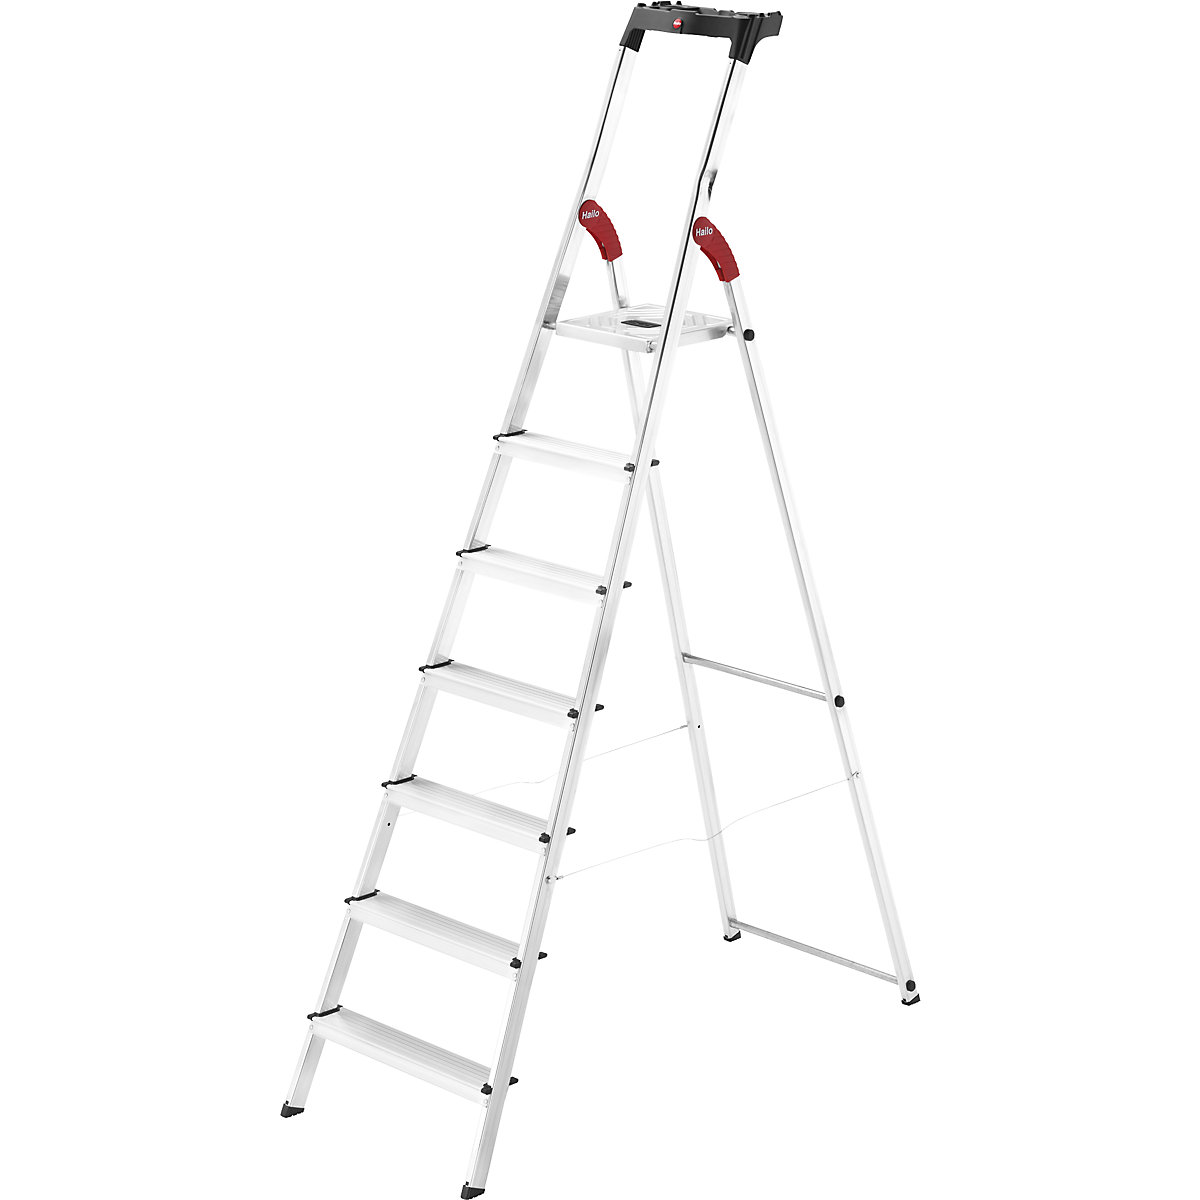 Aluminijasta dvokraka lestev s stopnicami StandardLine L60 – Hailo, nosilnost 150 kg, 7 stopnic